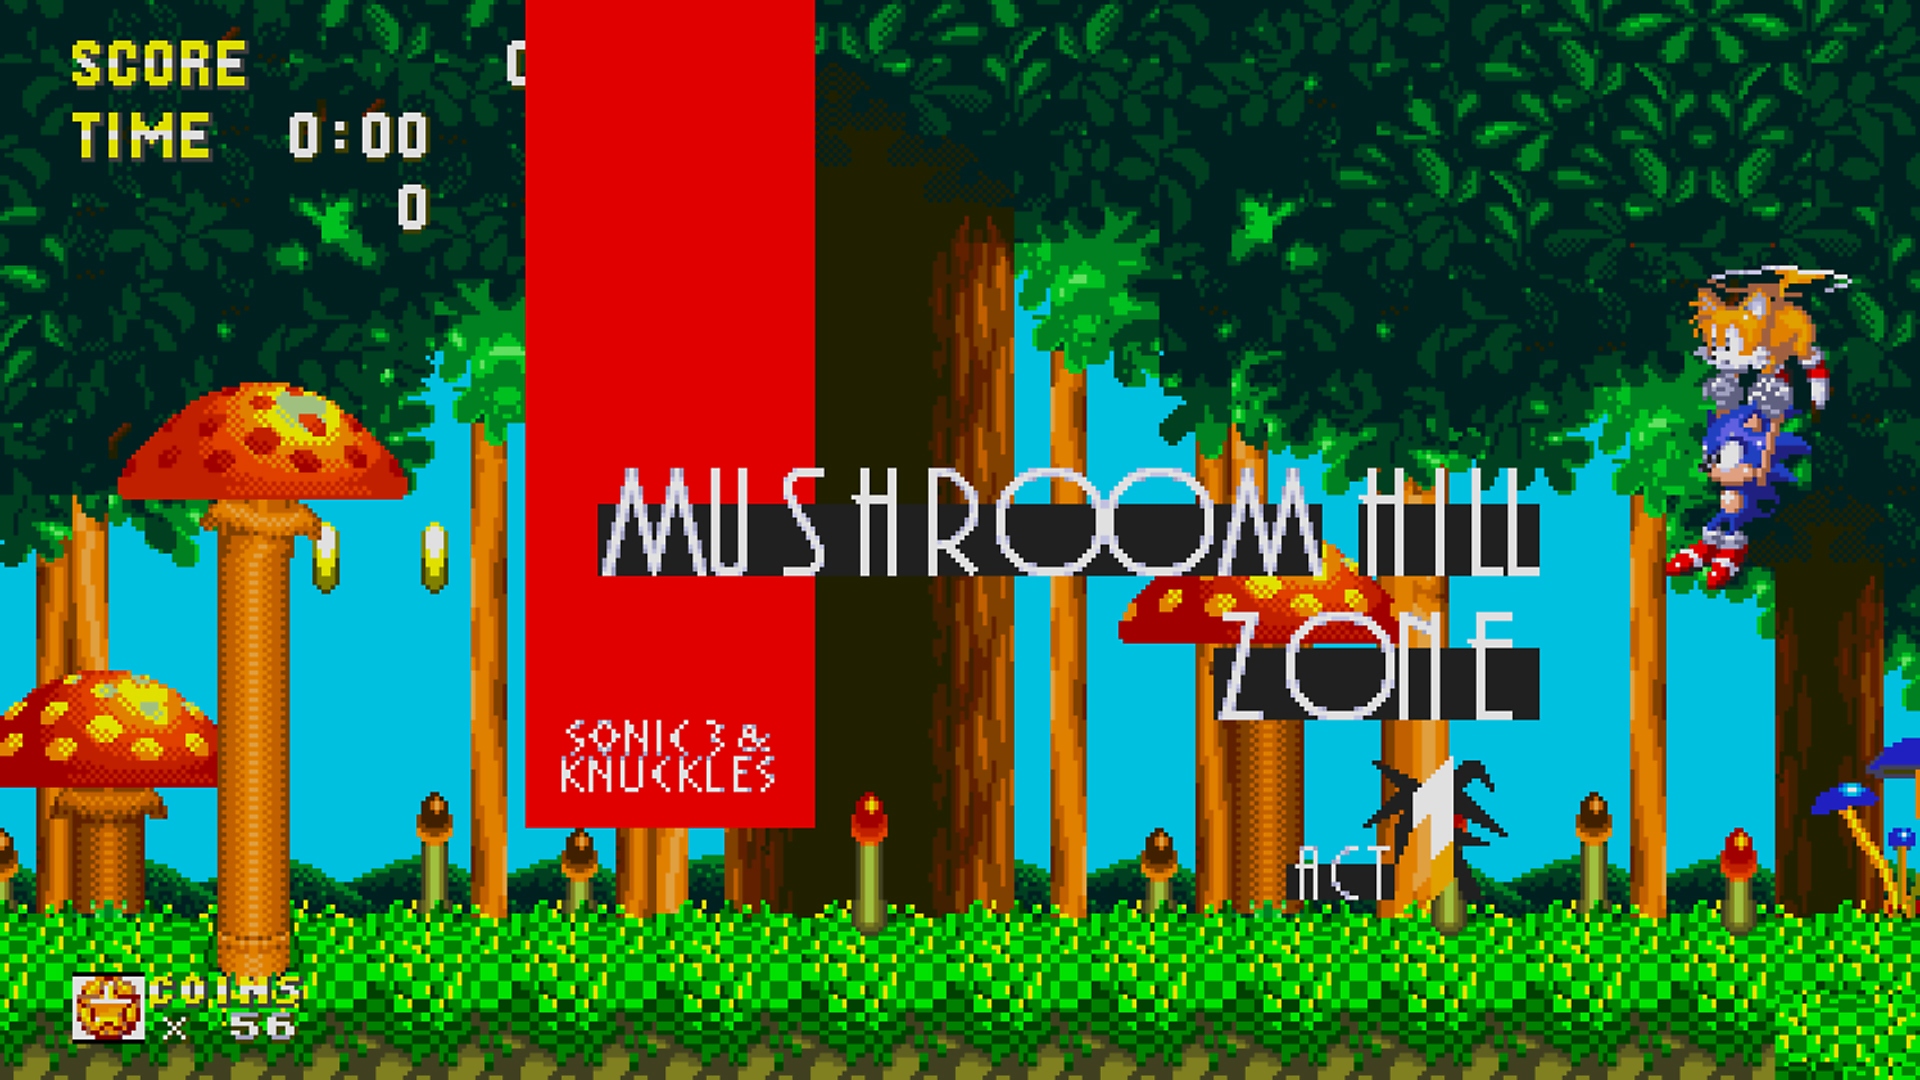 لقطة شاشة من Sonic Origins تعرض شاشة عنوان منطقة Mushroom Zone